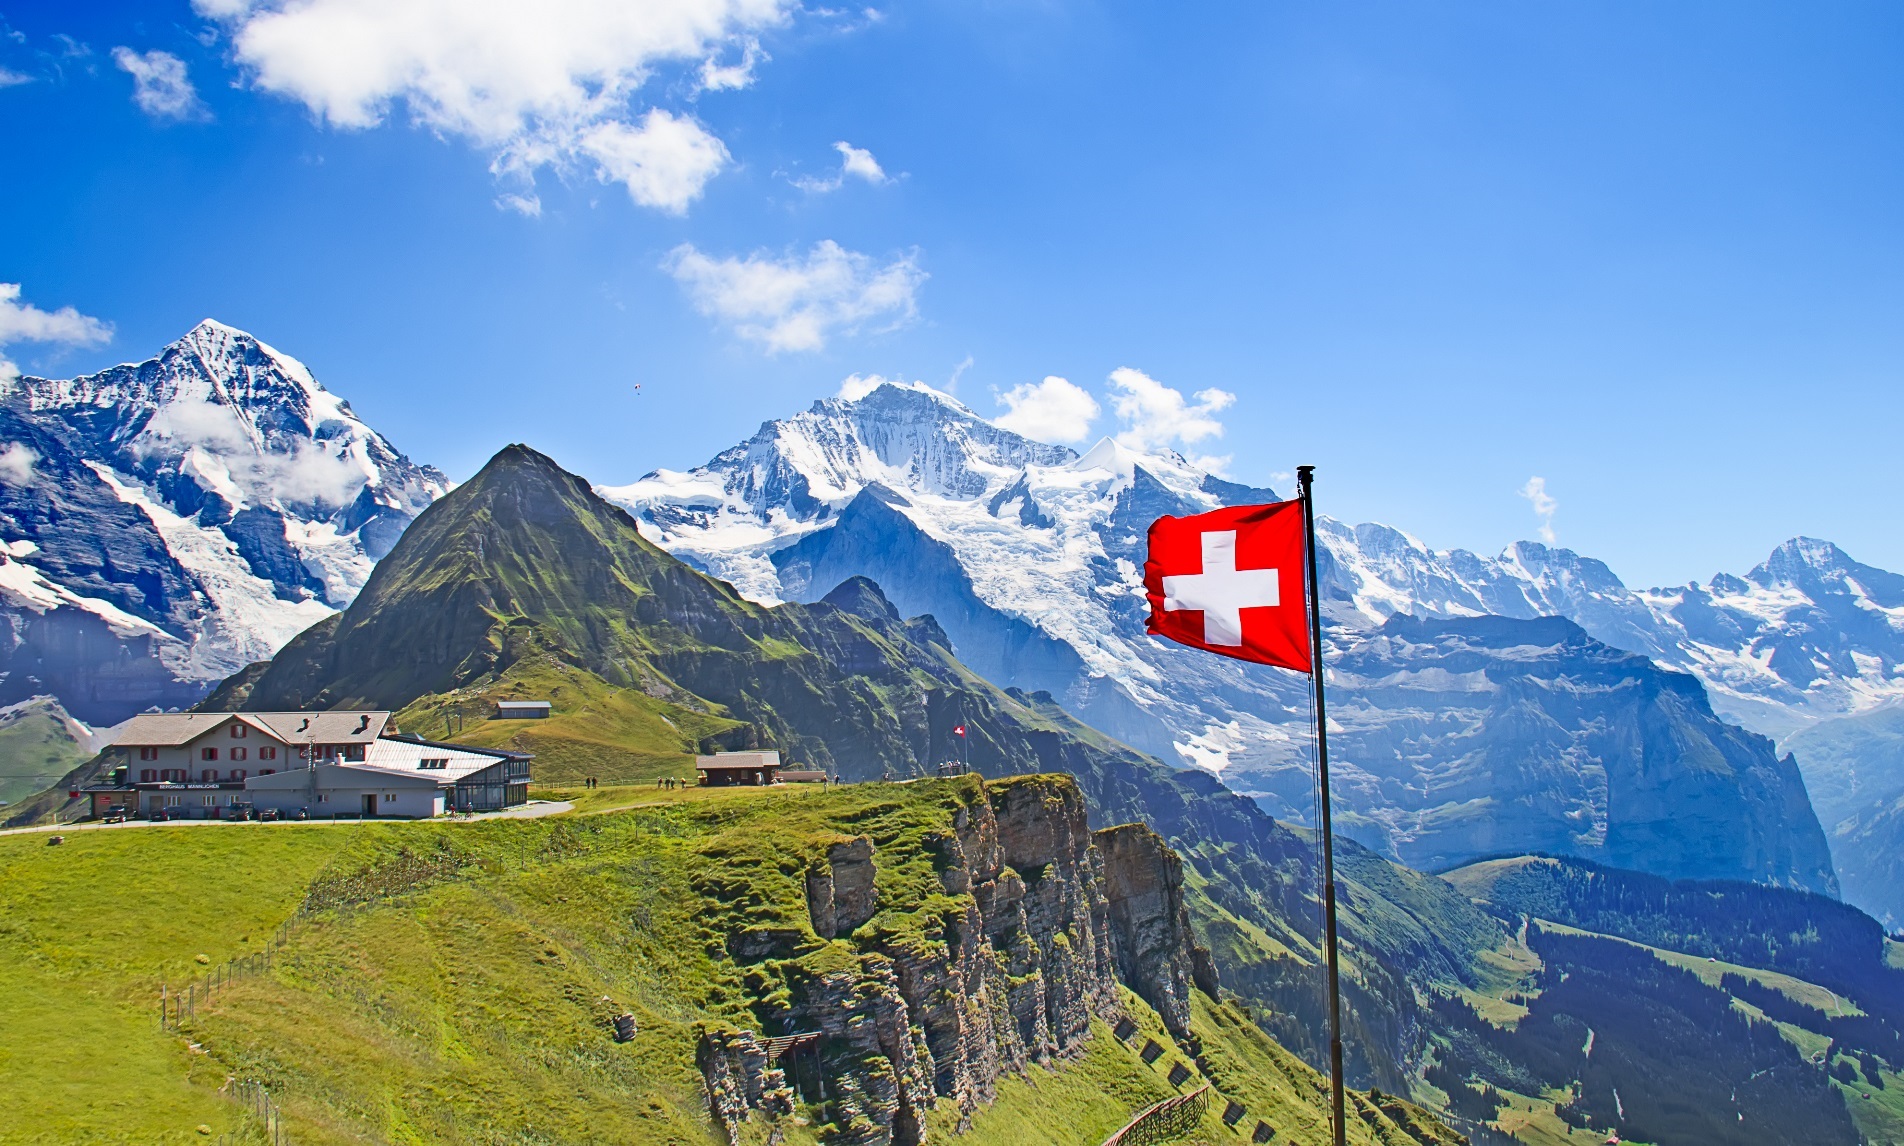 دیدن جاهای دیدنی سوئیس - عکس طبیعت زیبای سوئیس